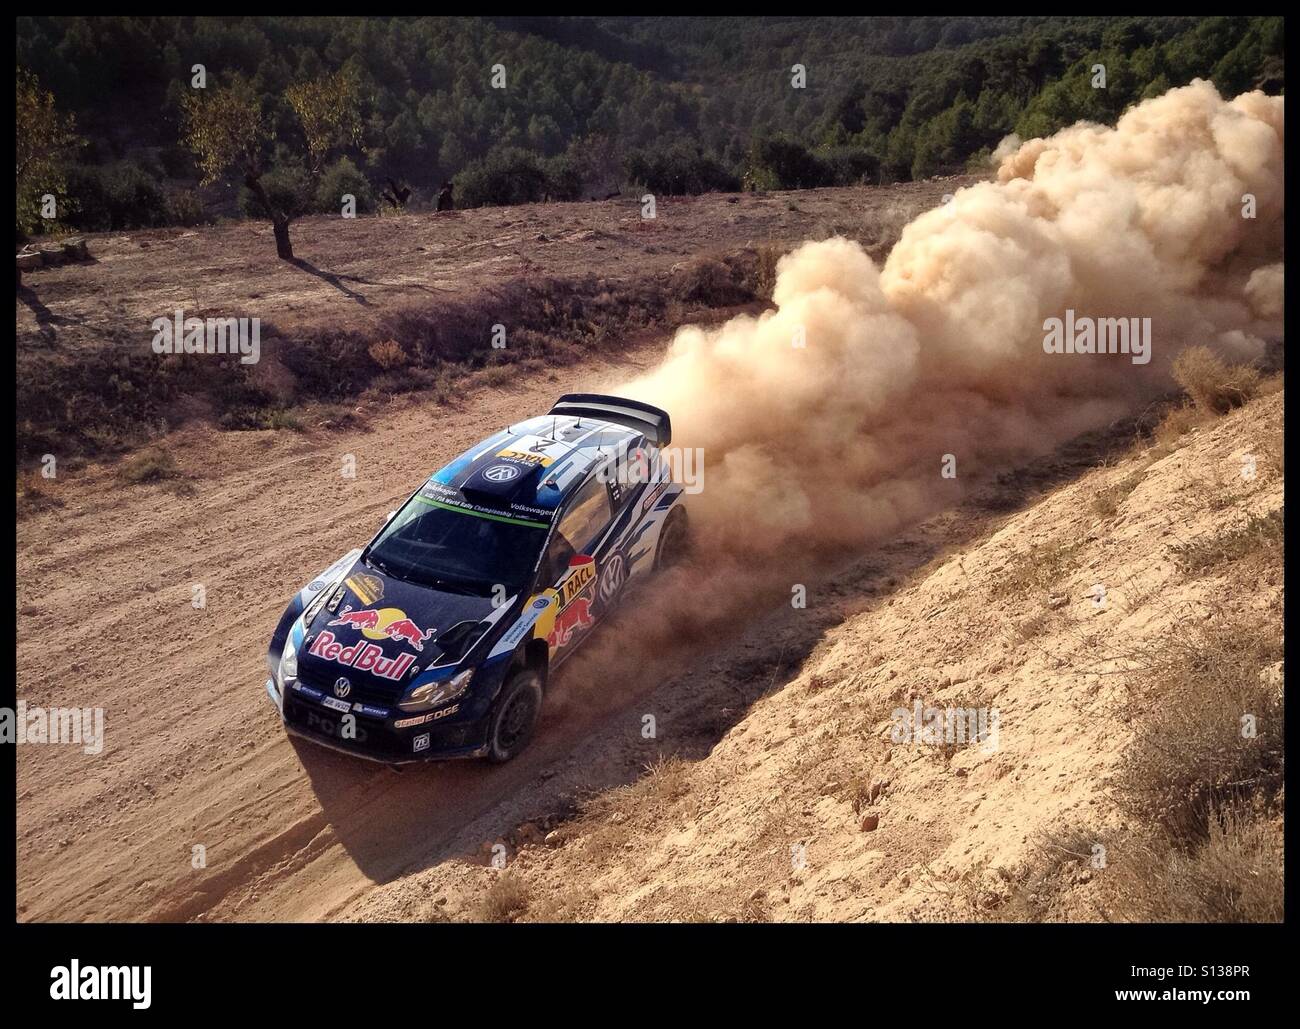 2015 rallye WRC Rally de España RACC-SS9 Terra Alta [2] La Fatarella Jari-Matti Latvala/Miikka Anttila - Volkswagen Polo R WRC Rally voiture, Catalogne, Espagne. Banque D'Images